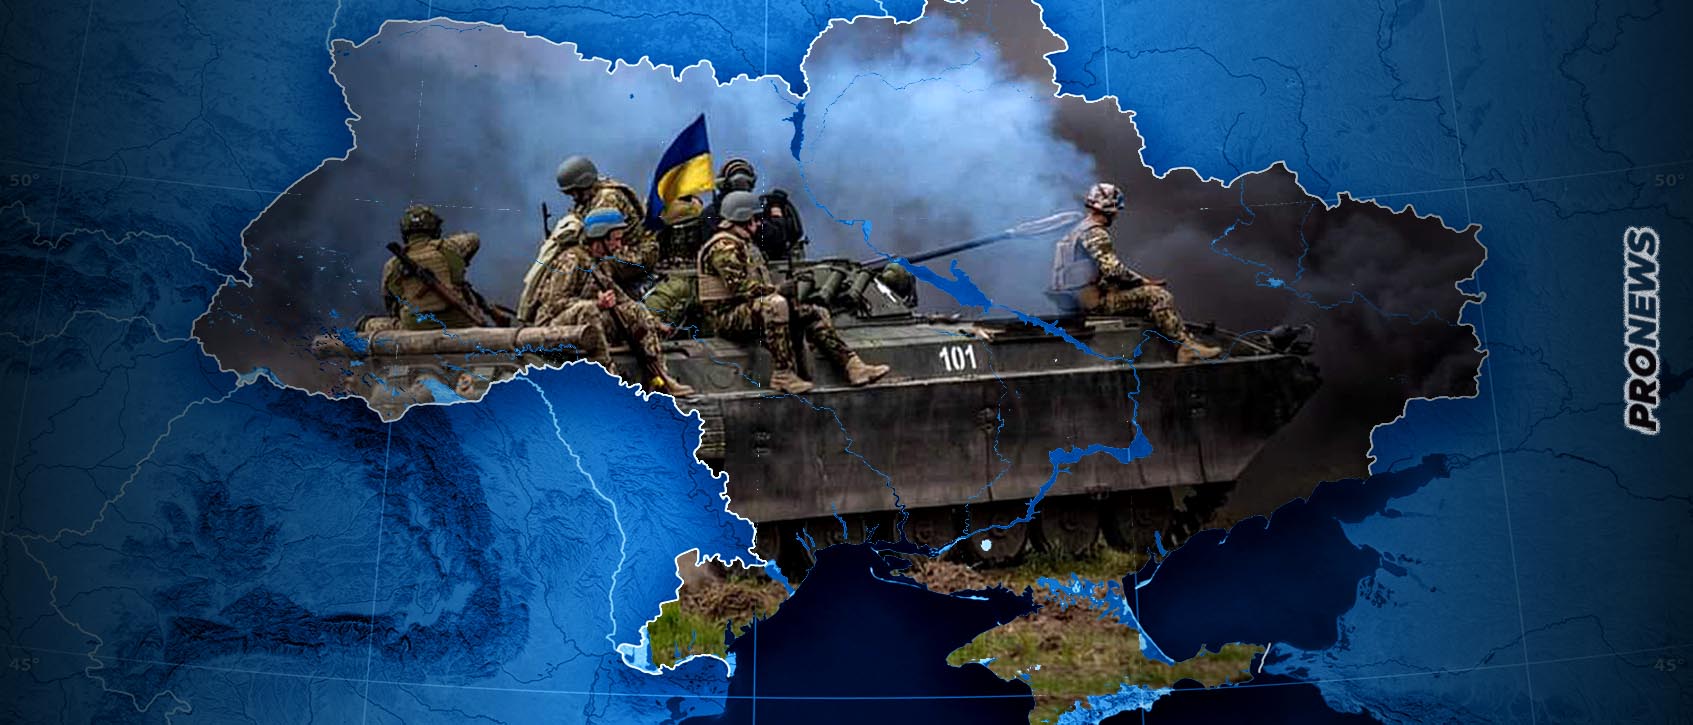 Γιατί δεν έγινε ποτέ η «εαρινή αντεπίθεση» των Ουκρανών – Μεγάλες απώλειες σε έμψυχο και άψυχο υλικό από τους ρωσικούς βομβαρδισμούς